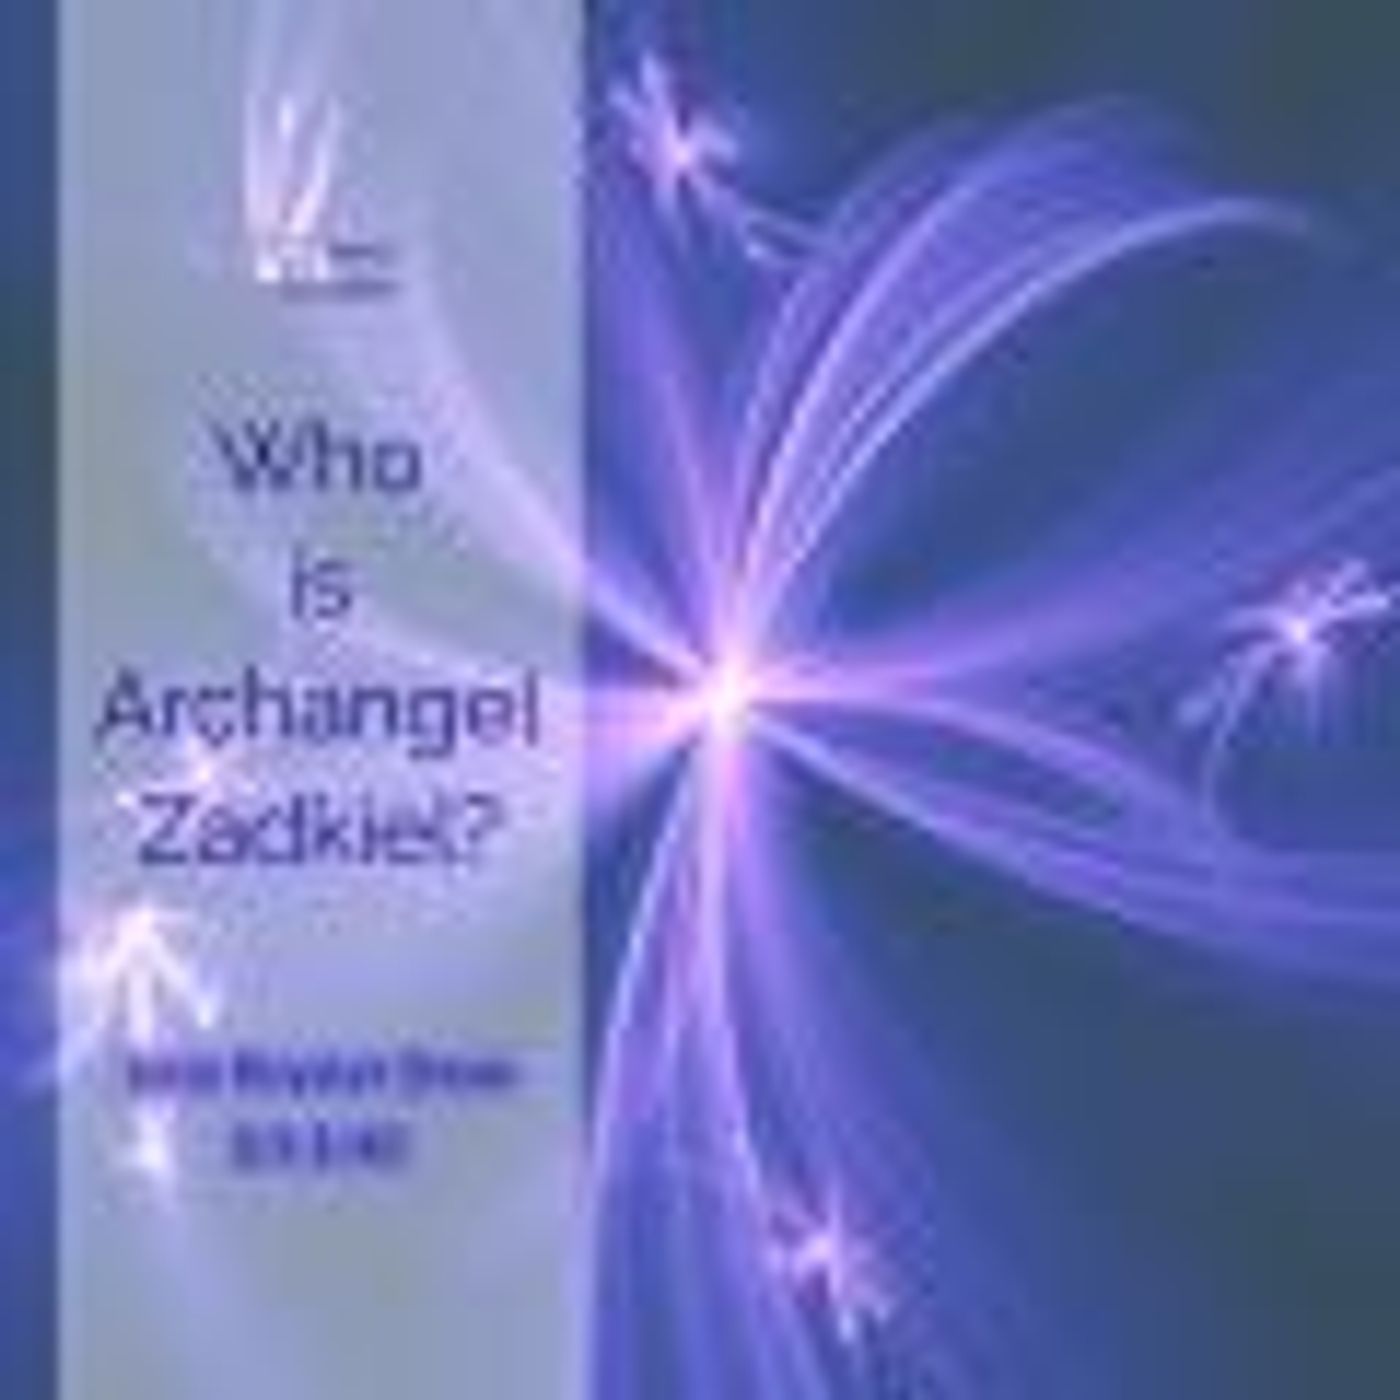 Who is Archangel Zadkiel?